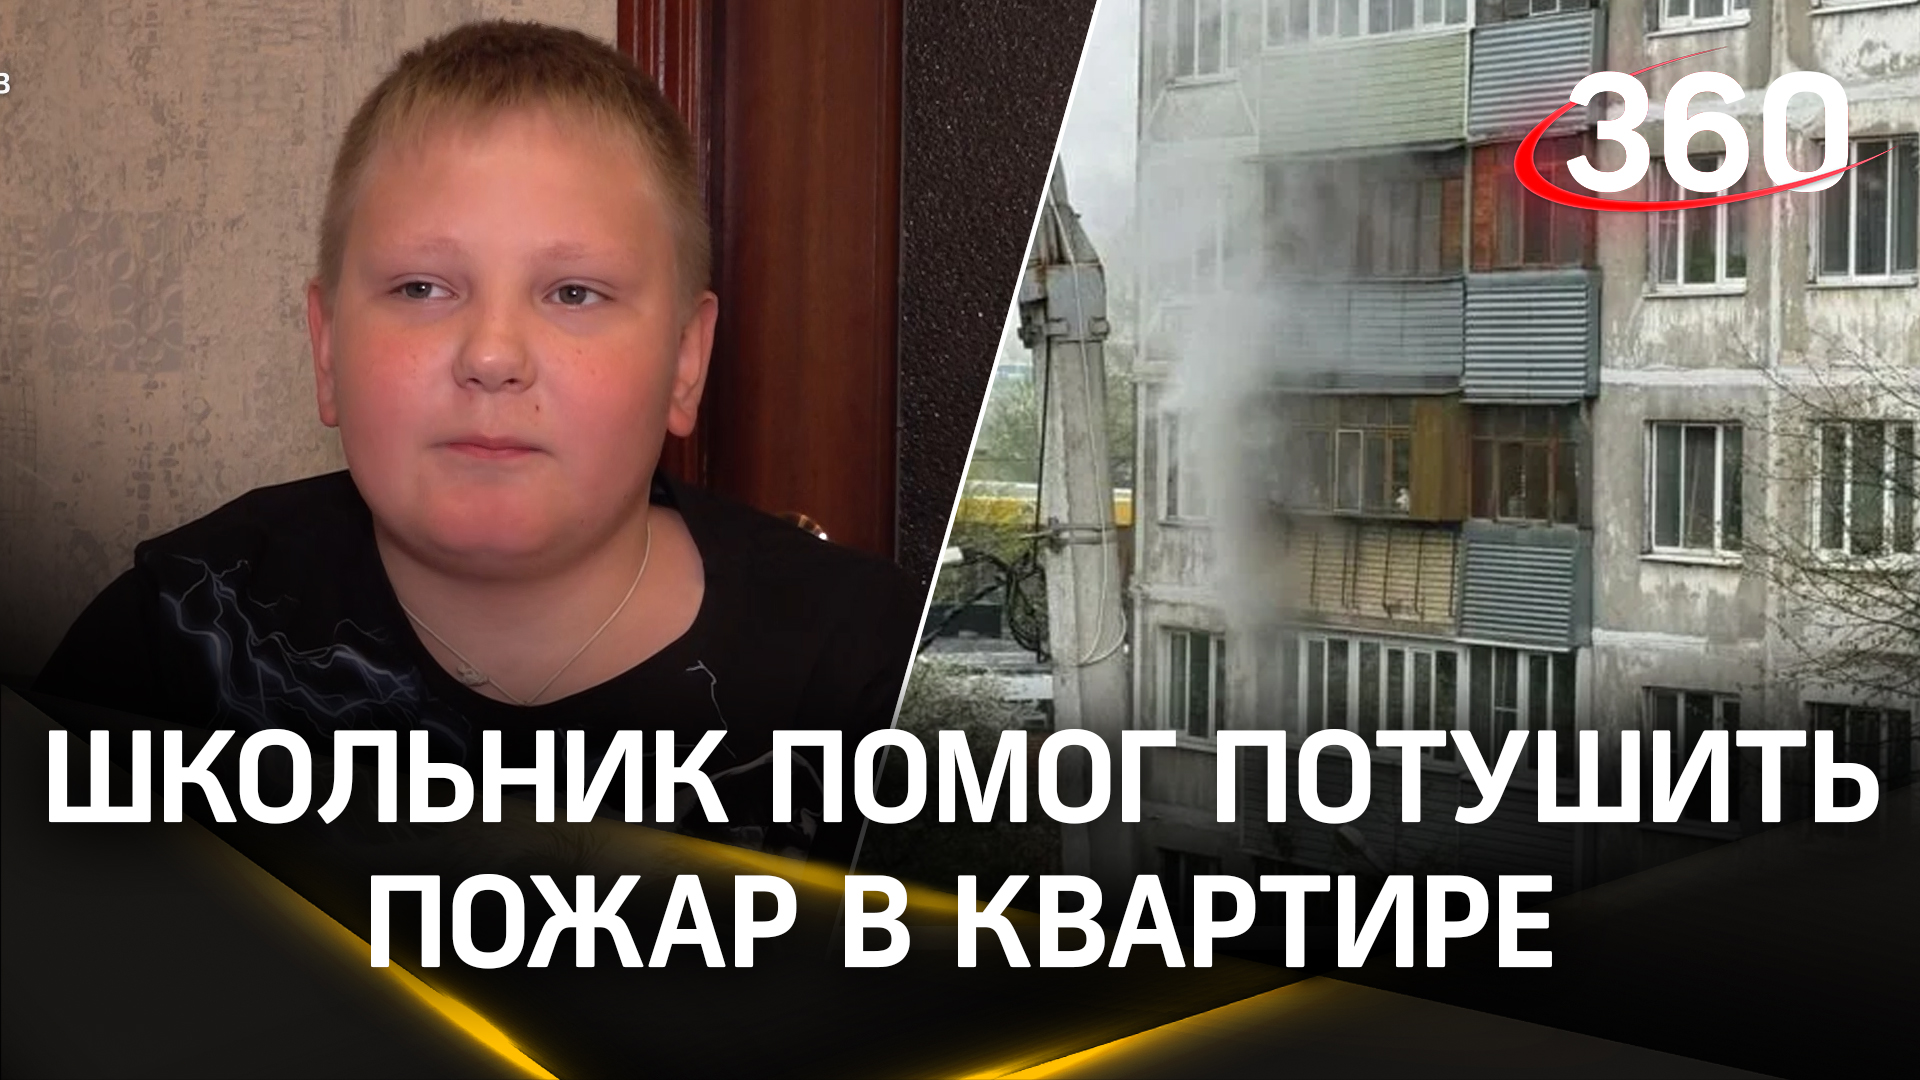 Школьник из Серпухова помог потушить пожар в квартире соседей